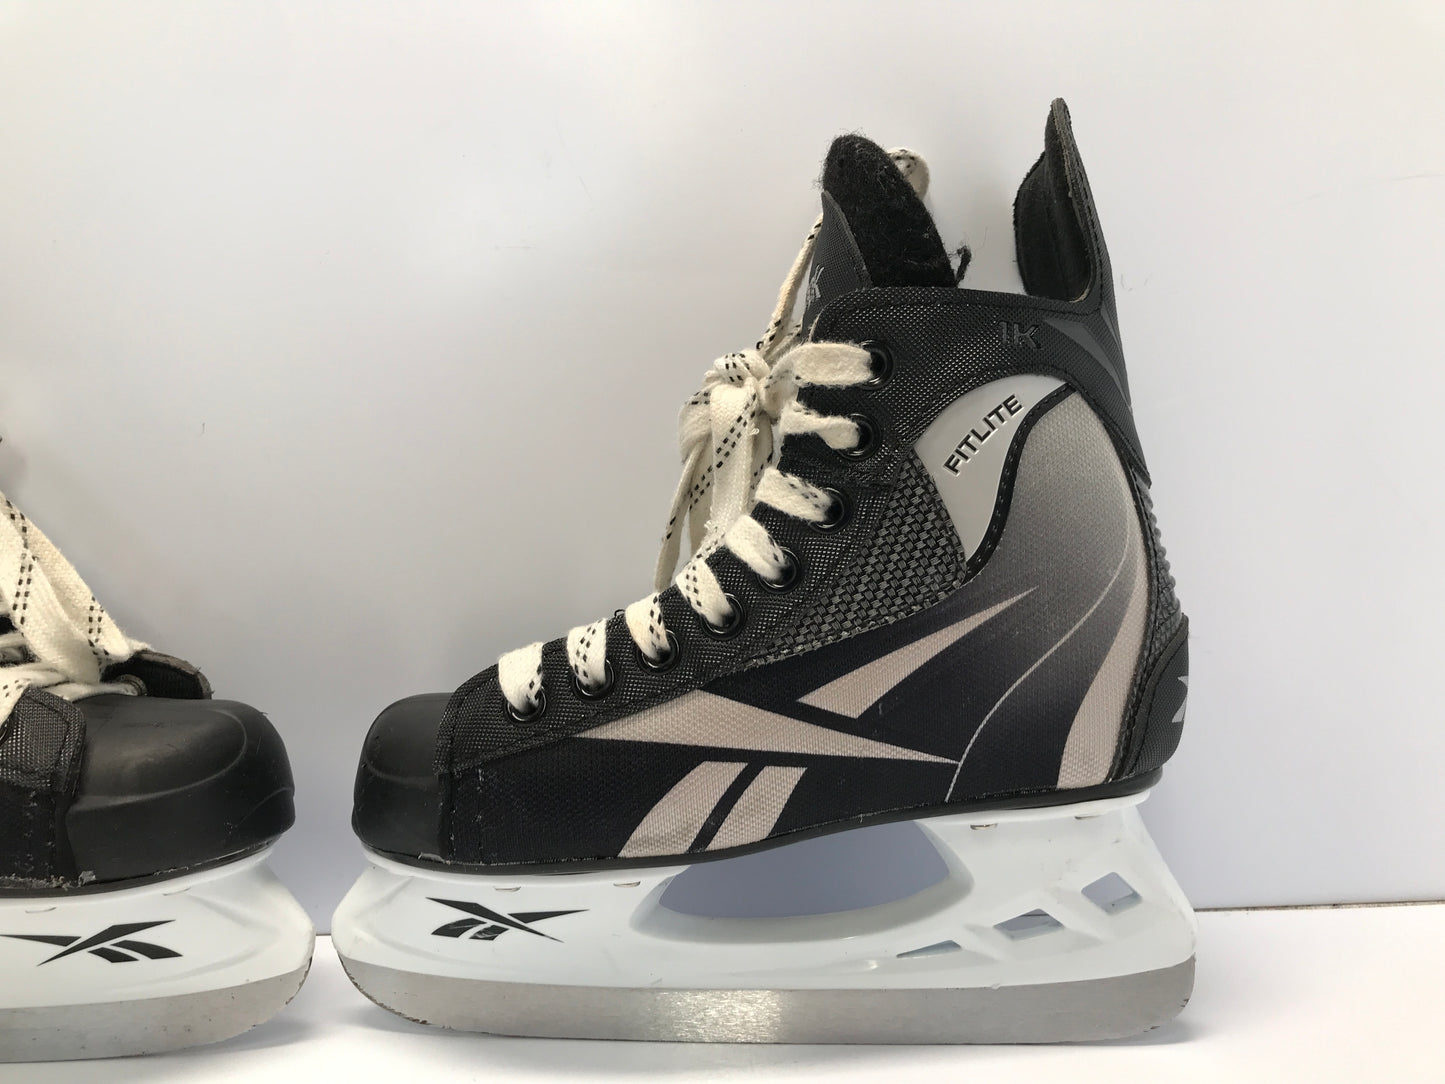 Hockey Skates Child Size 1 Shoe Size Skates Size 13 Reebok Like New